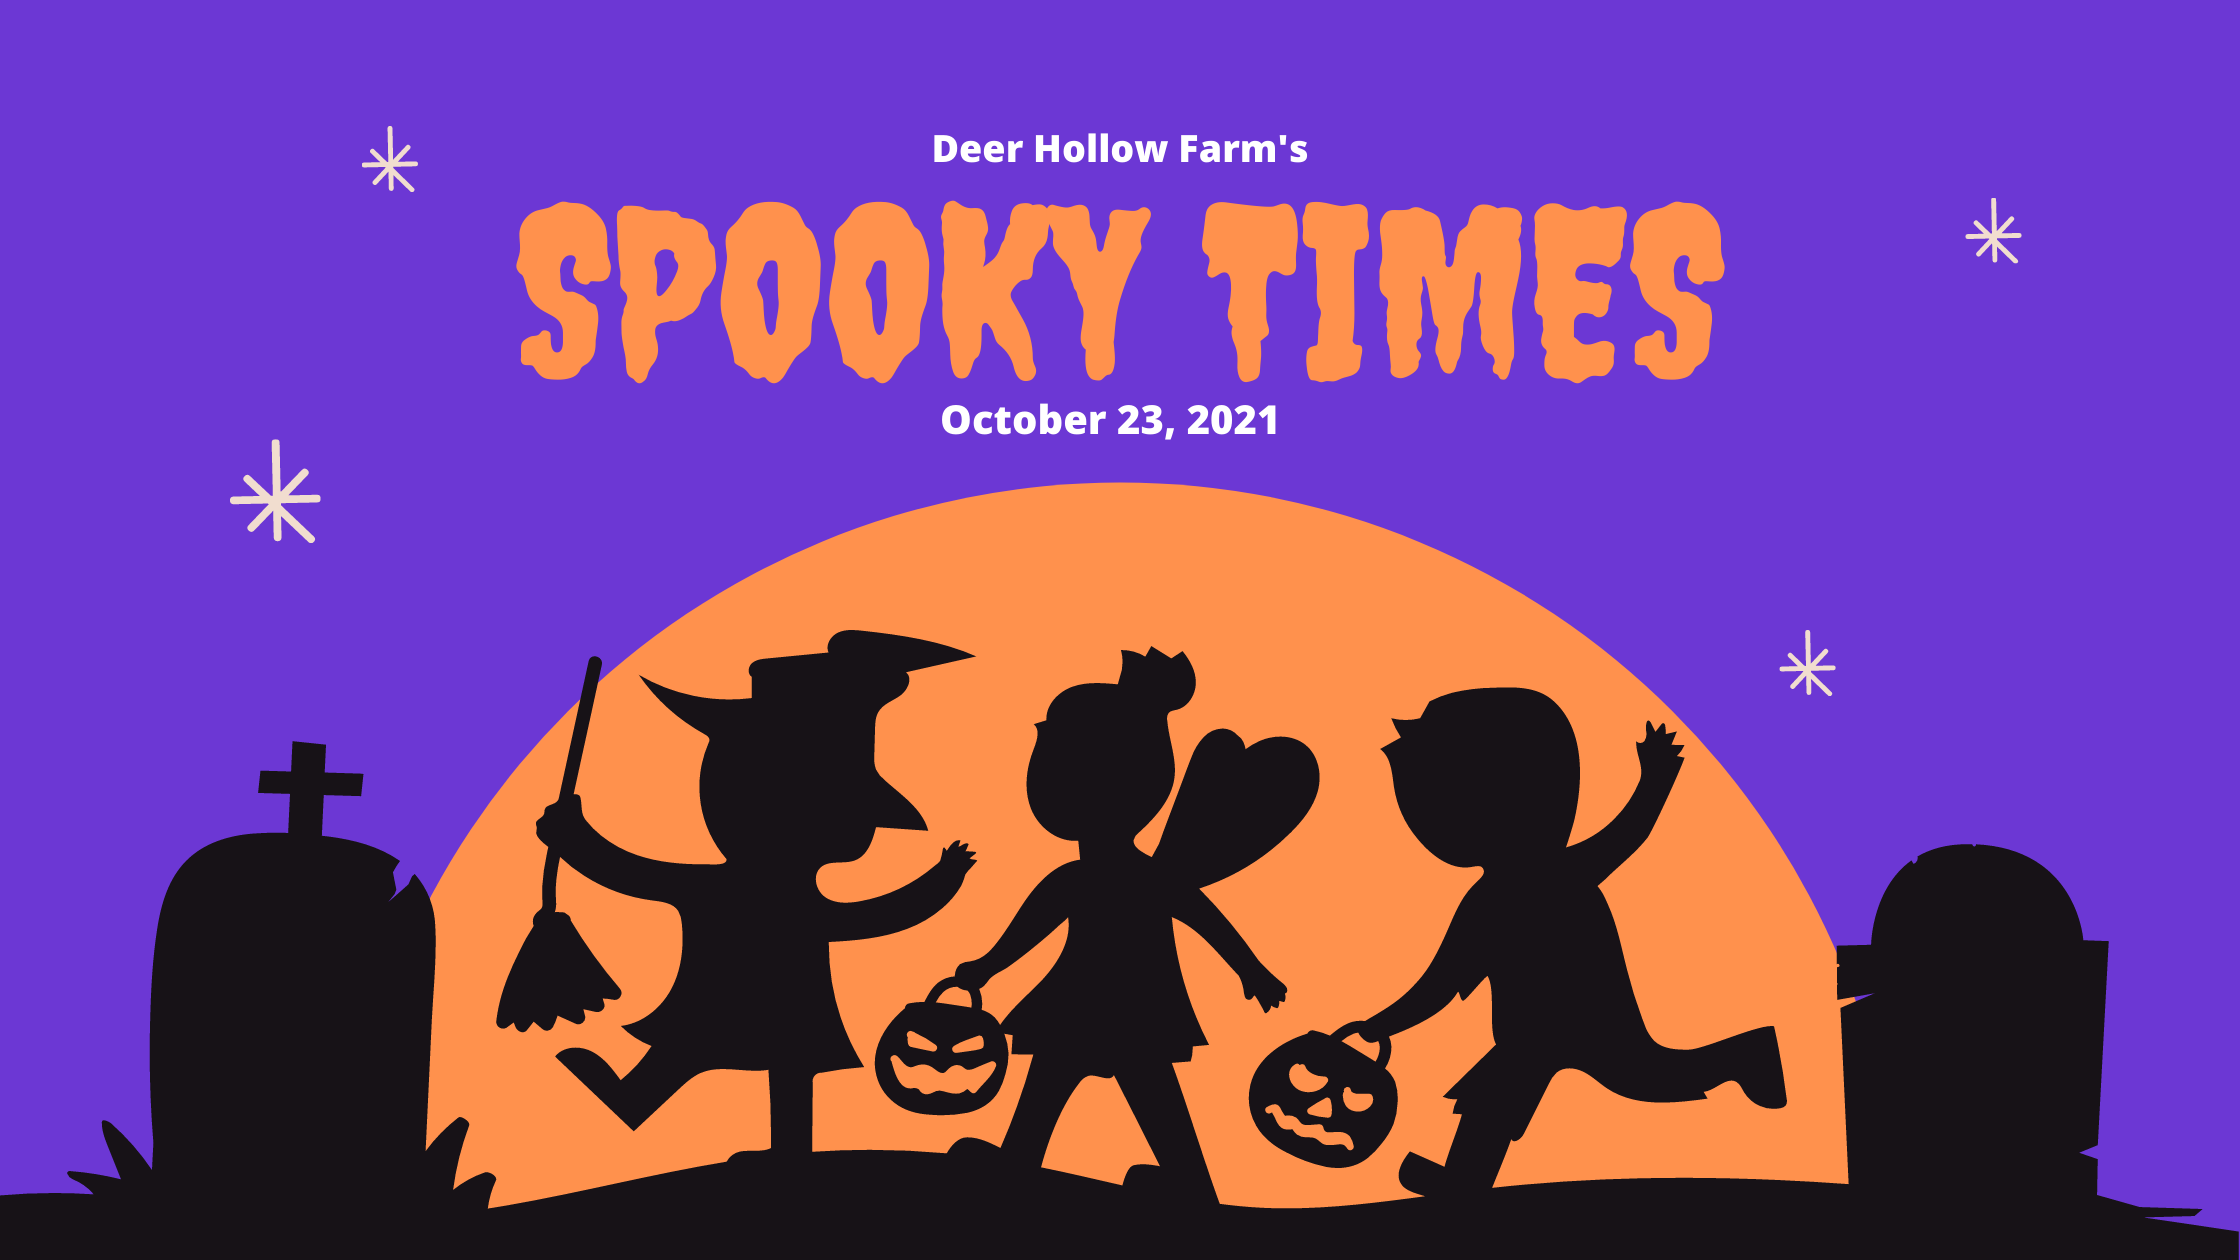 Deer Hollow Farm's spooky times 2021